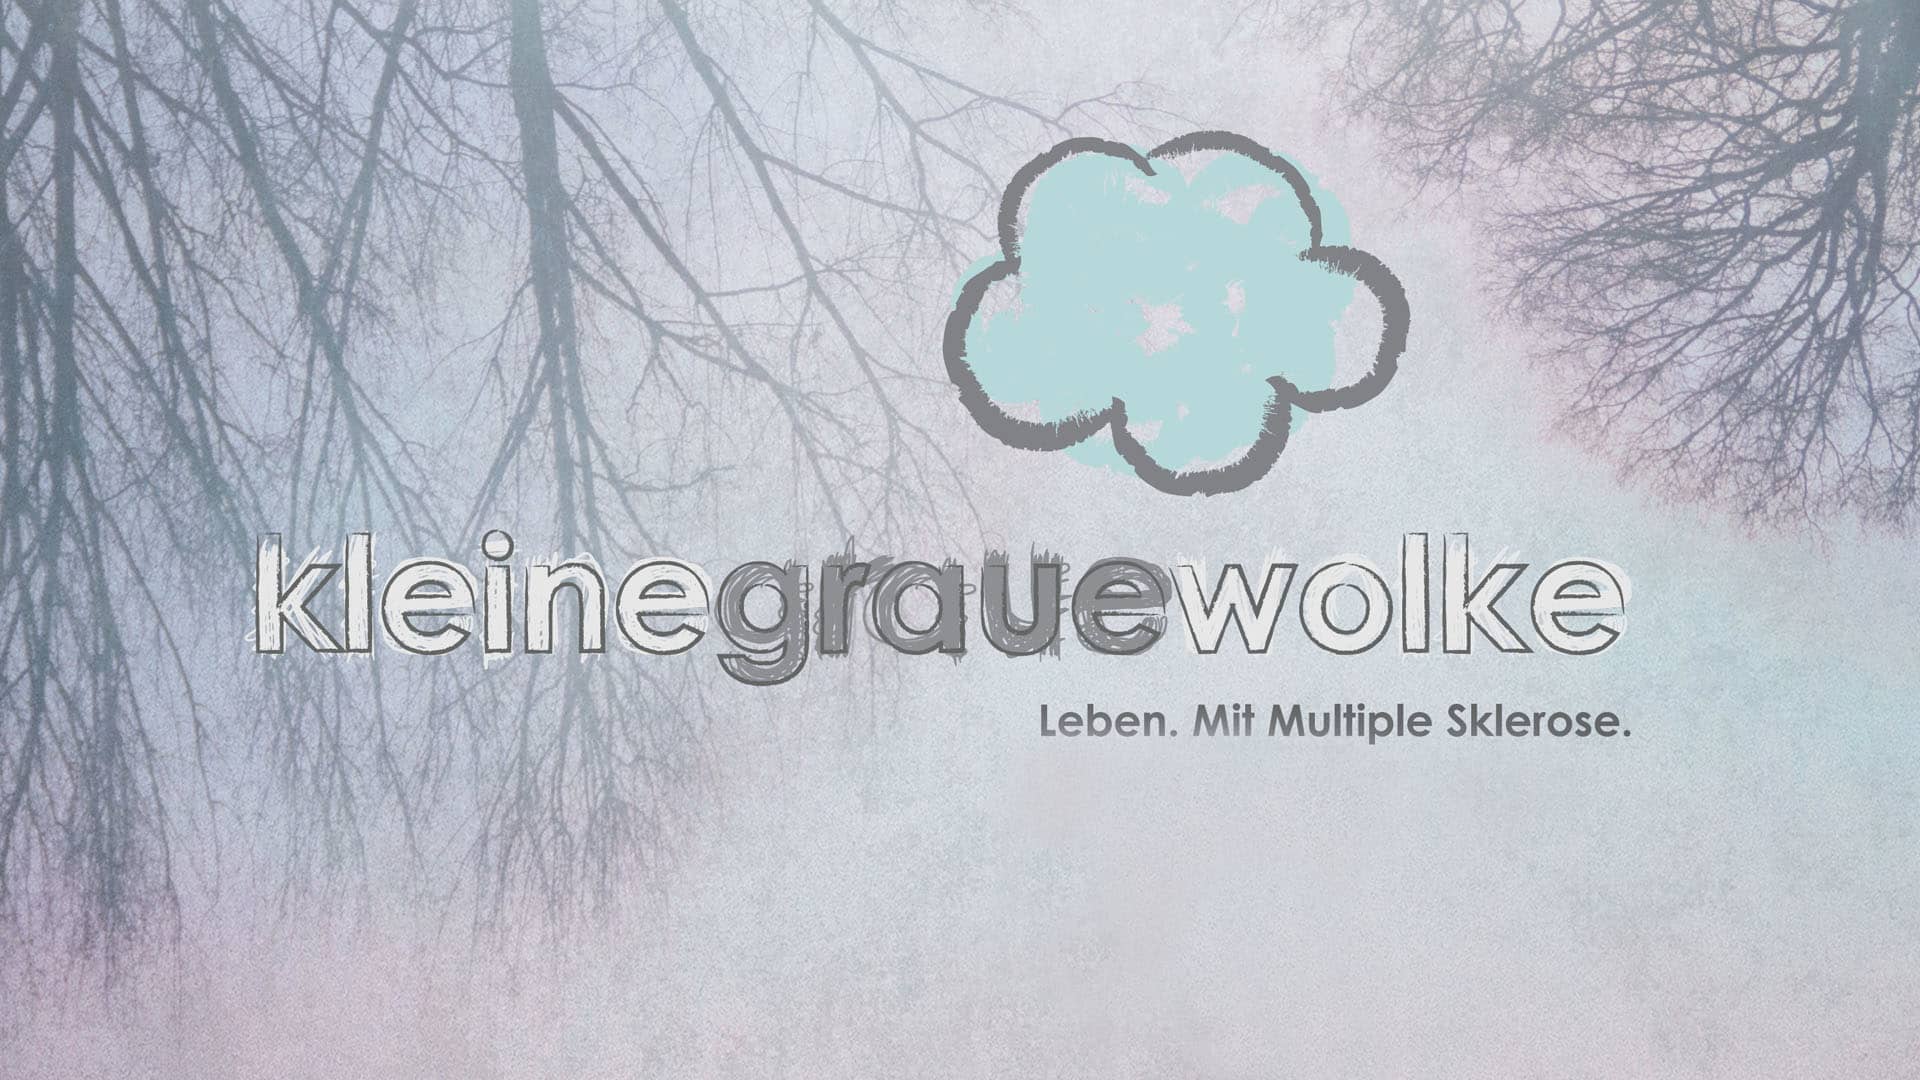 Kleine Graue Wolke HD wallpapers, Desktop wallpaper - most viewed